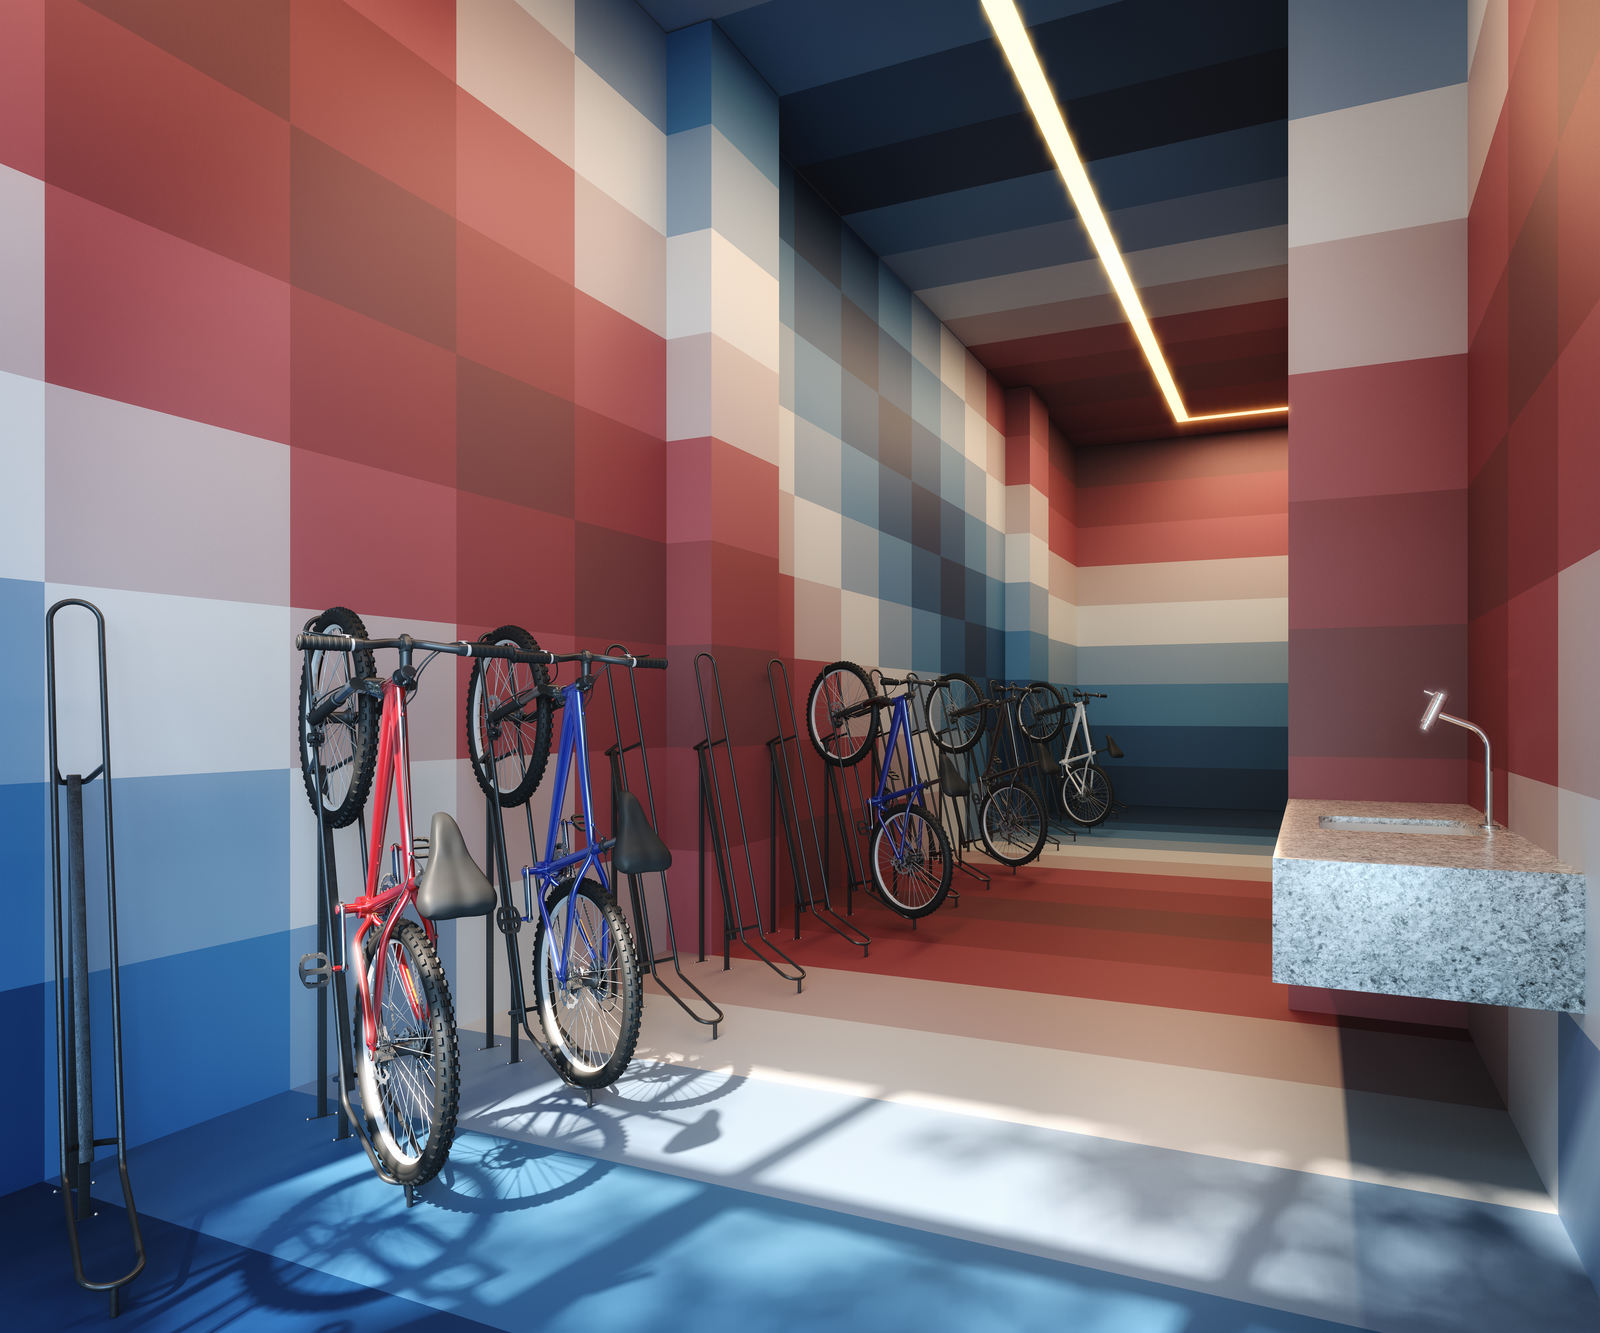 Bicicletario Studios